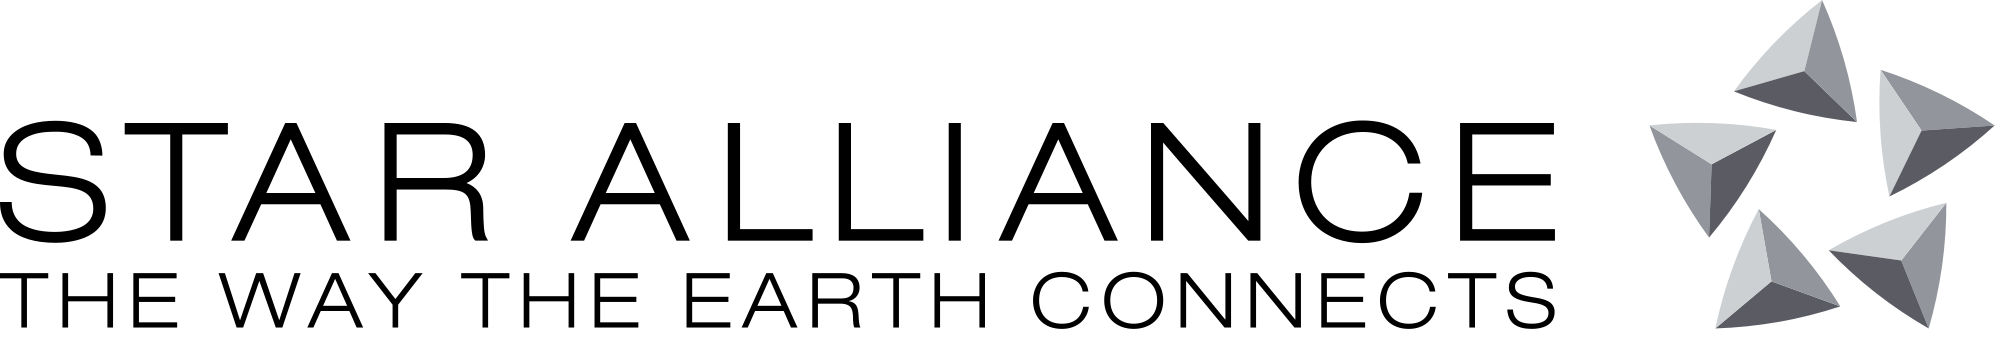 Star Alijansa logo